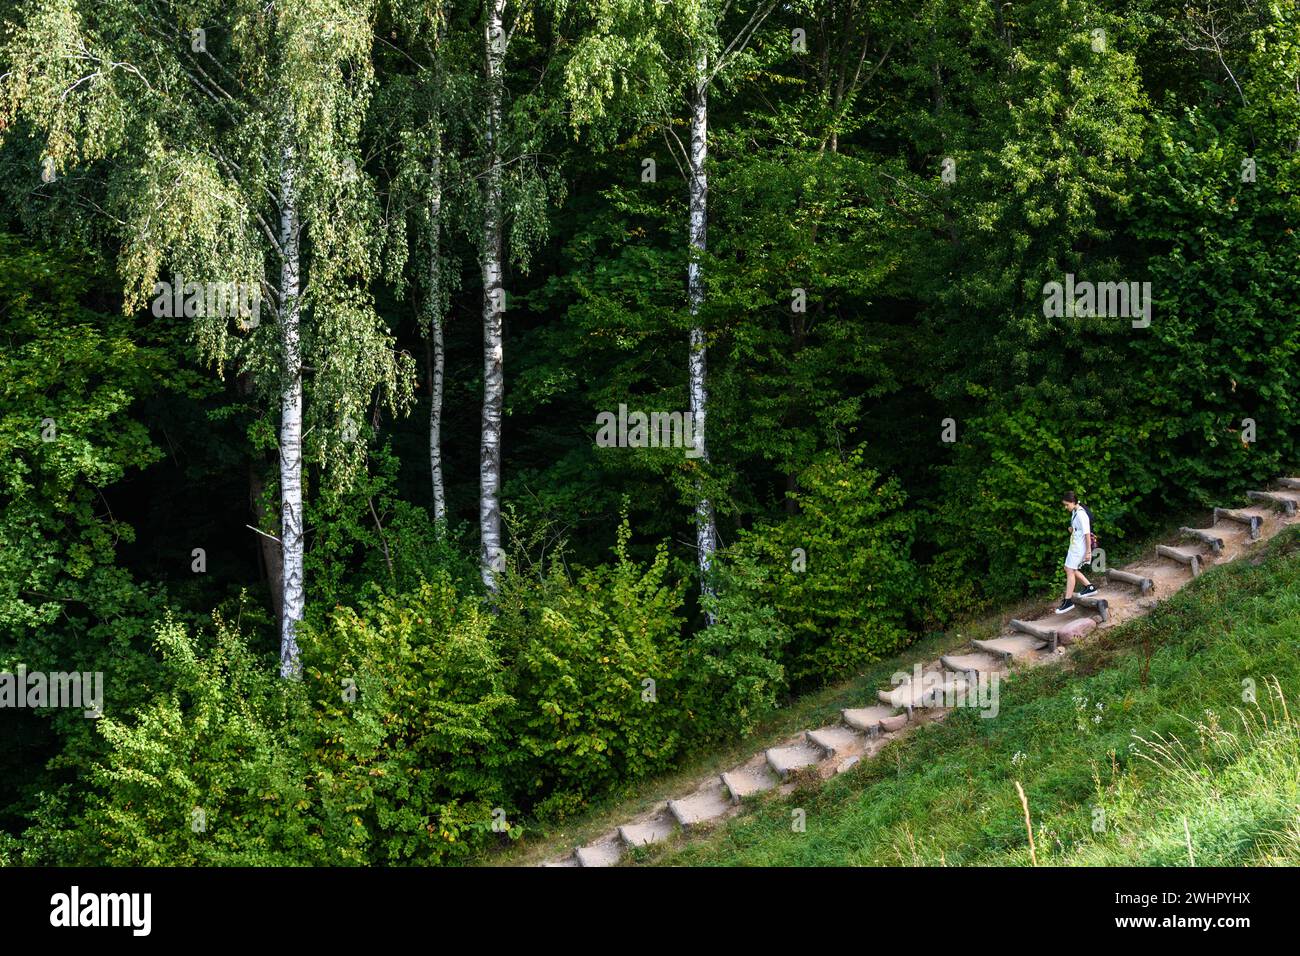 Wilde Natur, Sommergrün und sonnige Waldlandschaft voller Bäume und Sträucher mit einem Mädchen, das den Weg hinuntergeht. Stockfoto